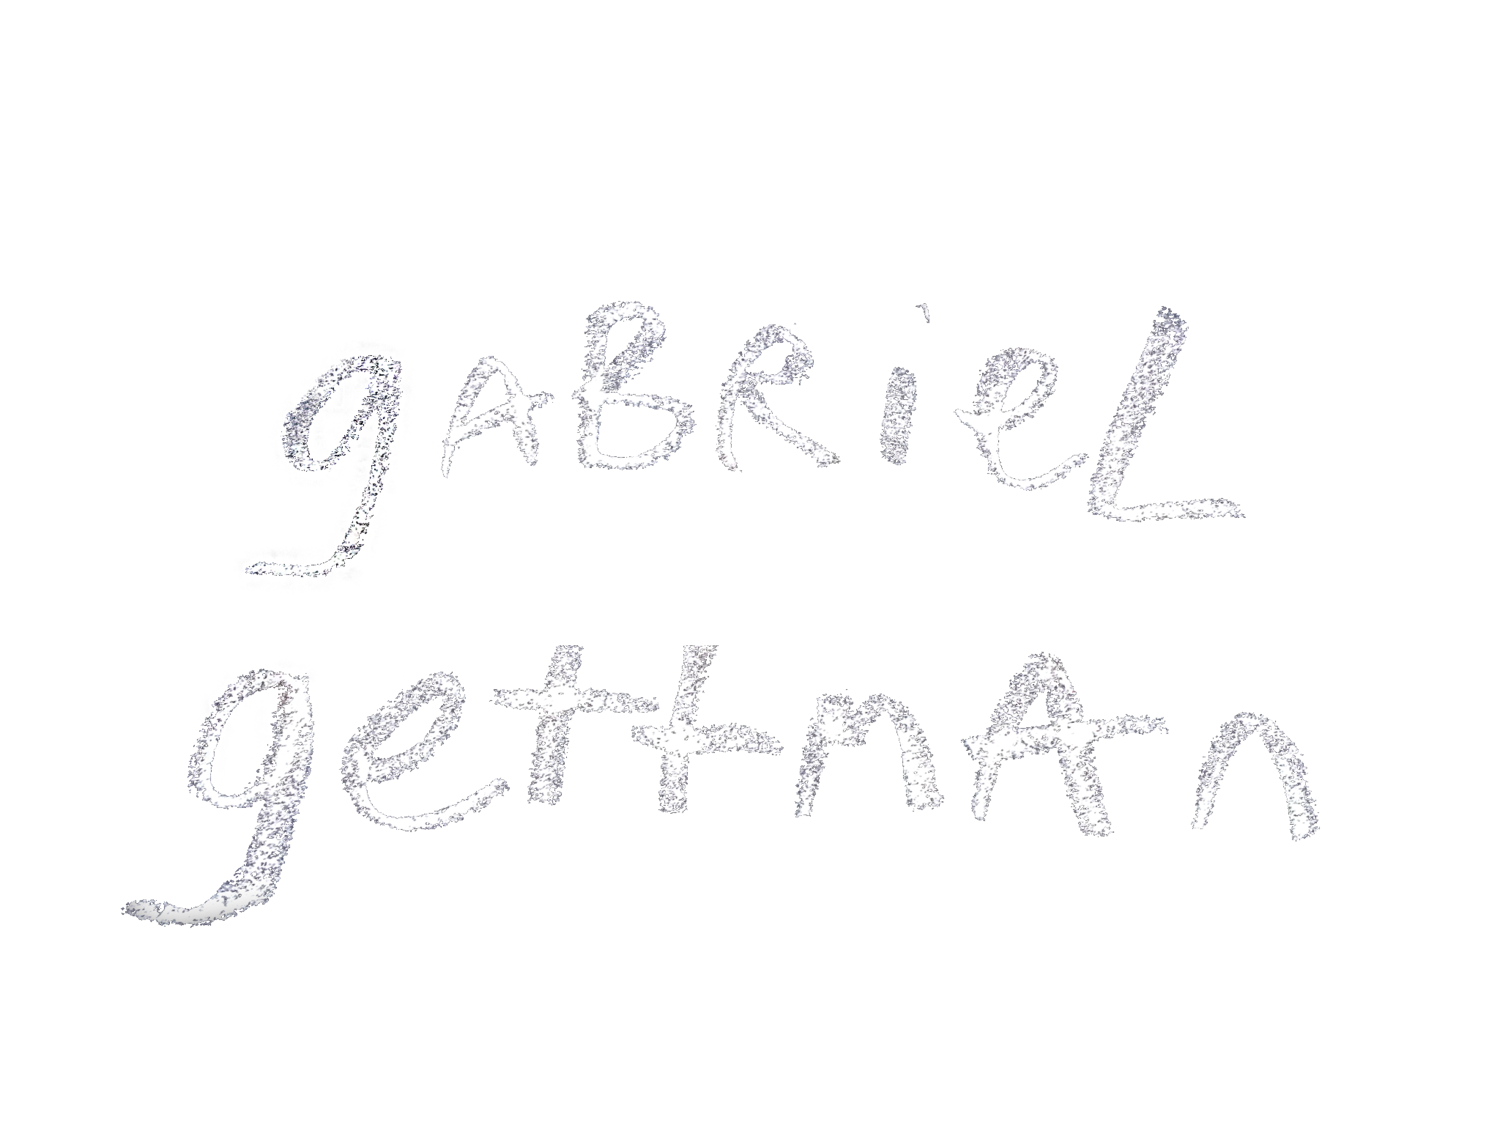 gabriel gettman